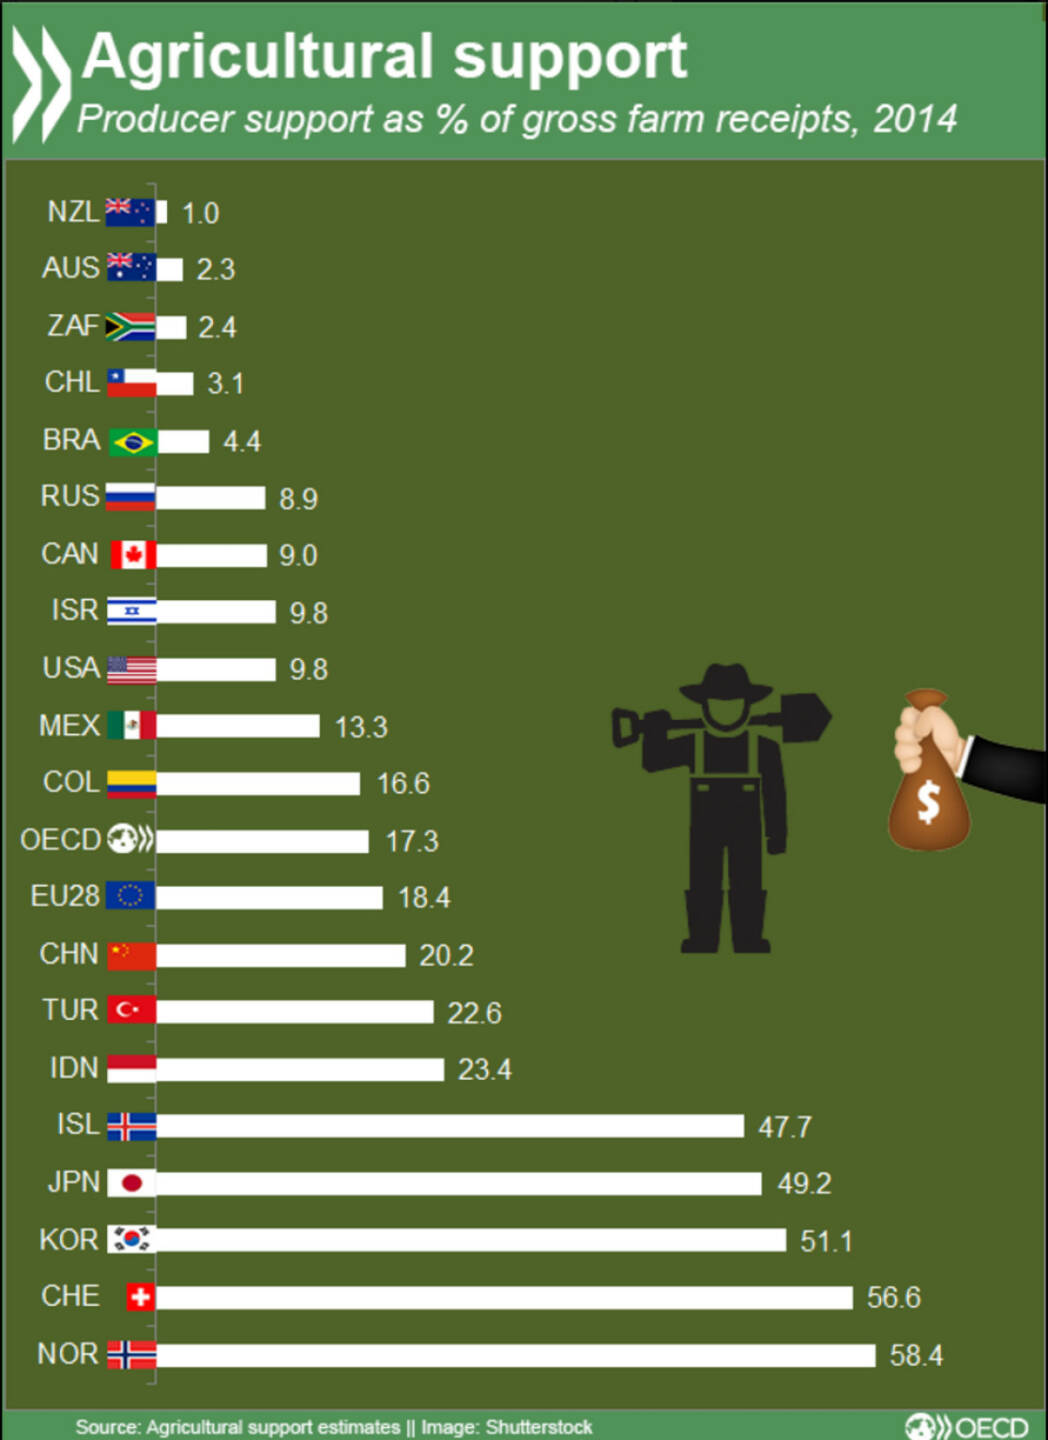 Die Schweiz und Norwegen sind die Länder, in denen Agrarbetriebe den größten Teil ihrer Einkünfte aus staatlichen Maßnahmen beziehen. 
http://bit.ly/1Qmz30D